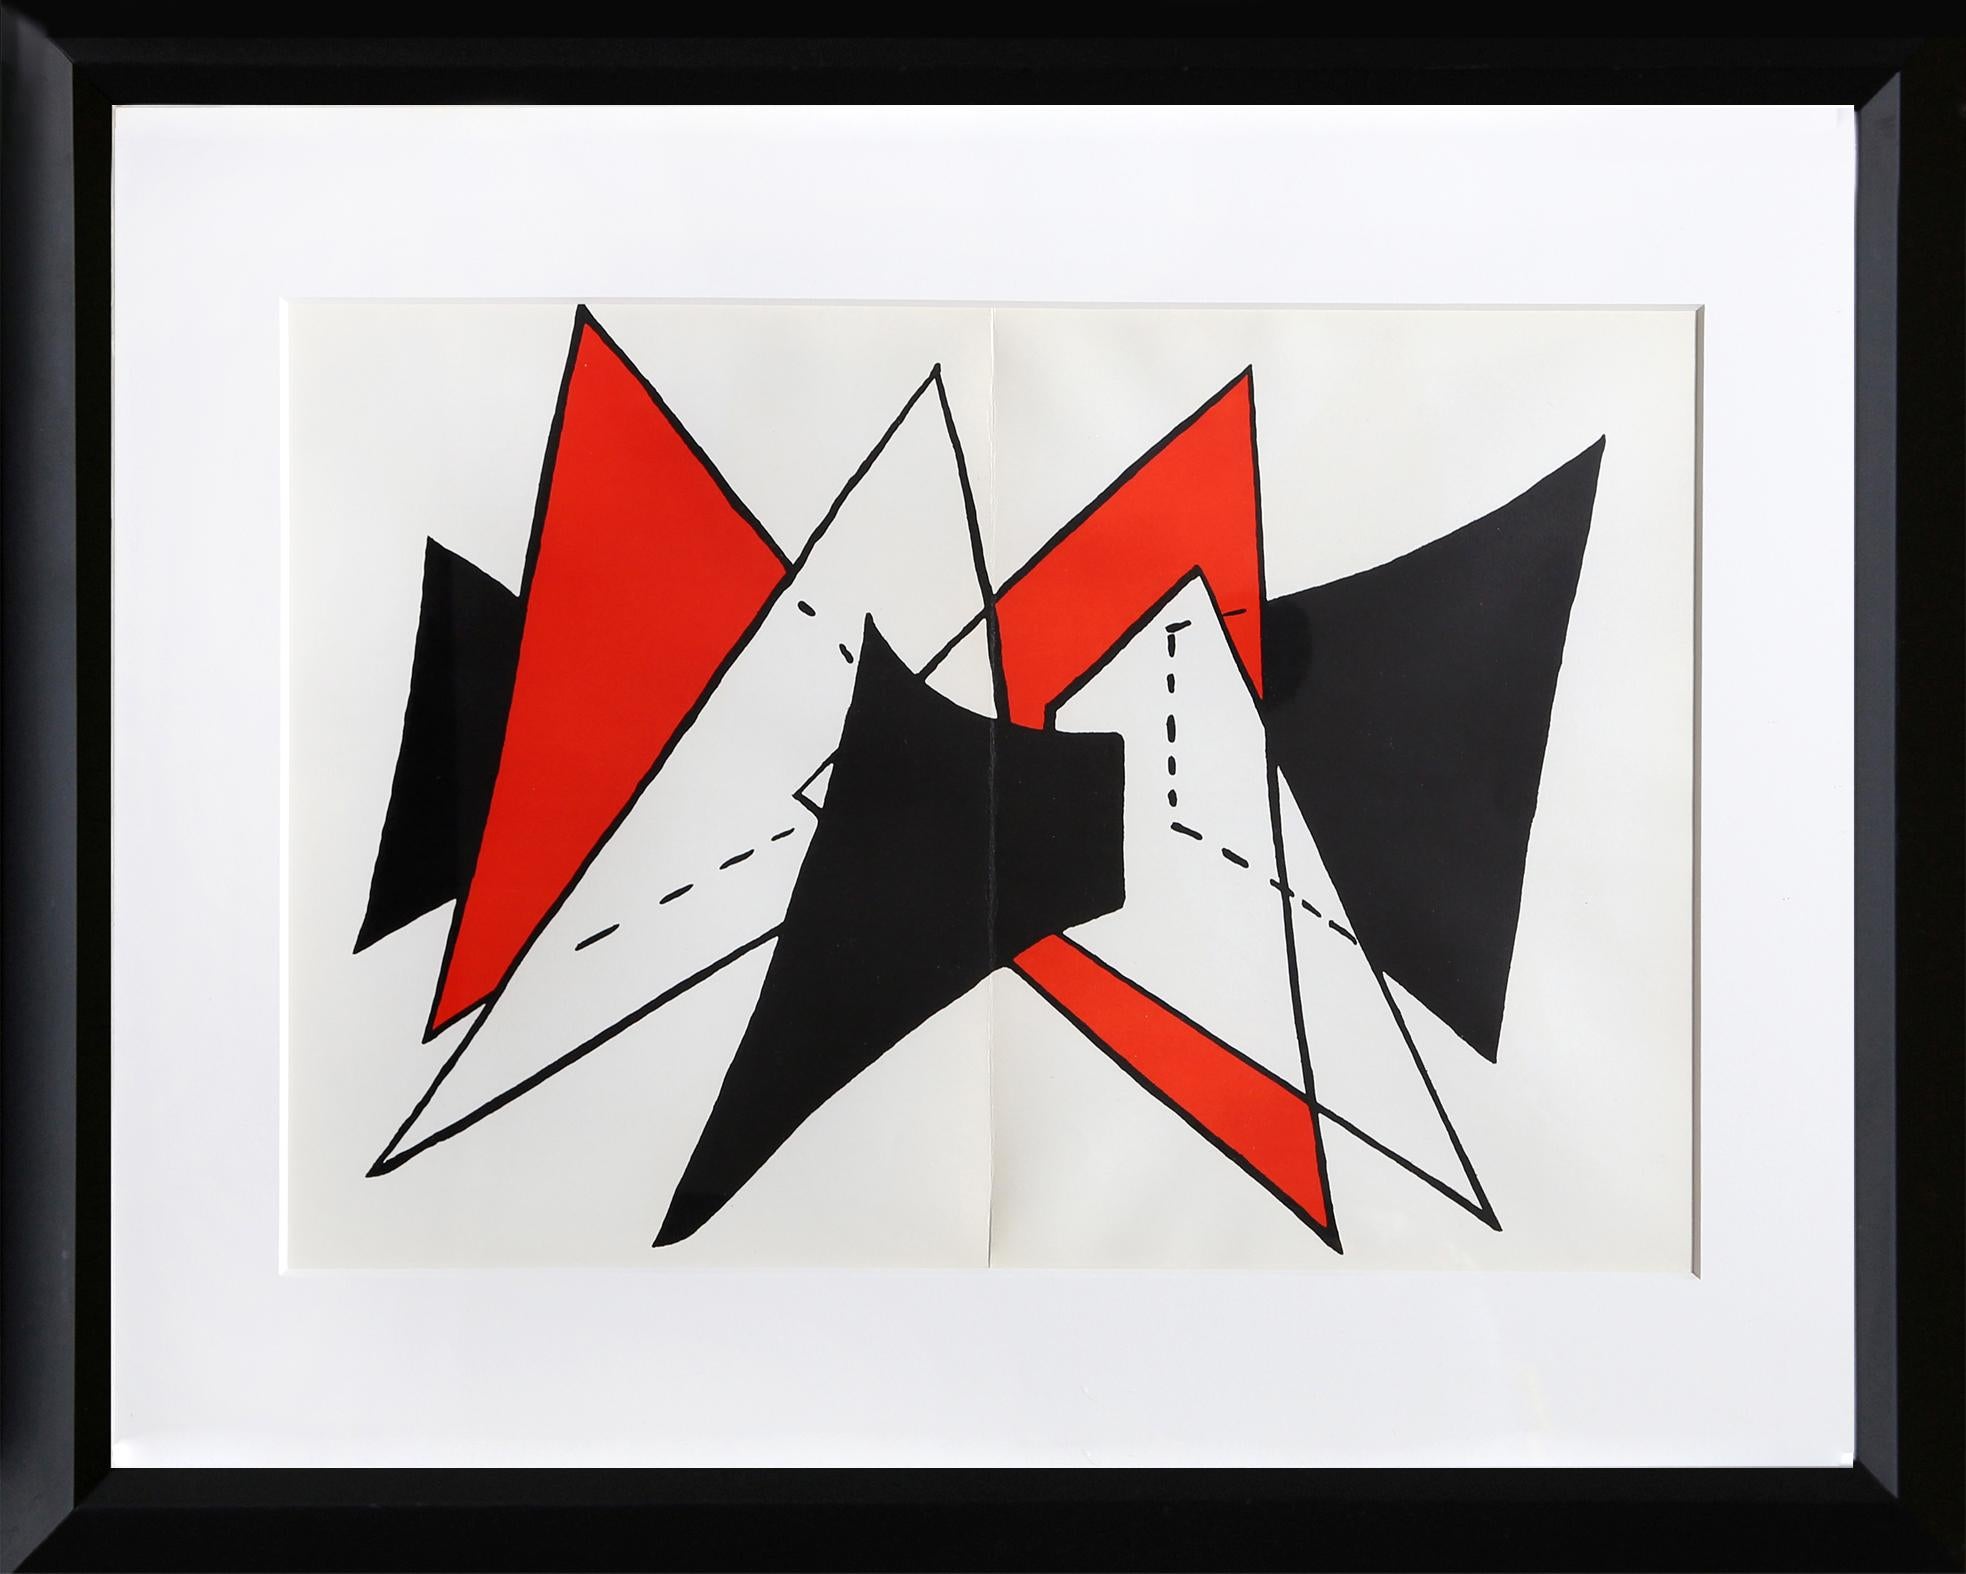 Alexander Calder, Américain (1898-1976)
Étude pour la sculpture II de Derriere Le Miroir
Date : 1975
Lithographie
Taille : 38,1 cm x 55,88 cm (15 in. x 22 in.)
Taille du cadre : 23 x 30 pouces
Imprimeur : Maeght, Paris
Éditeur : Maeght, Paris